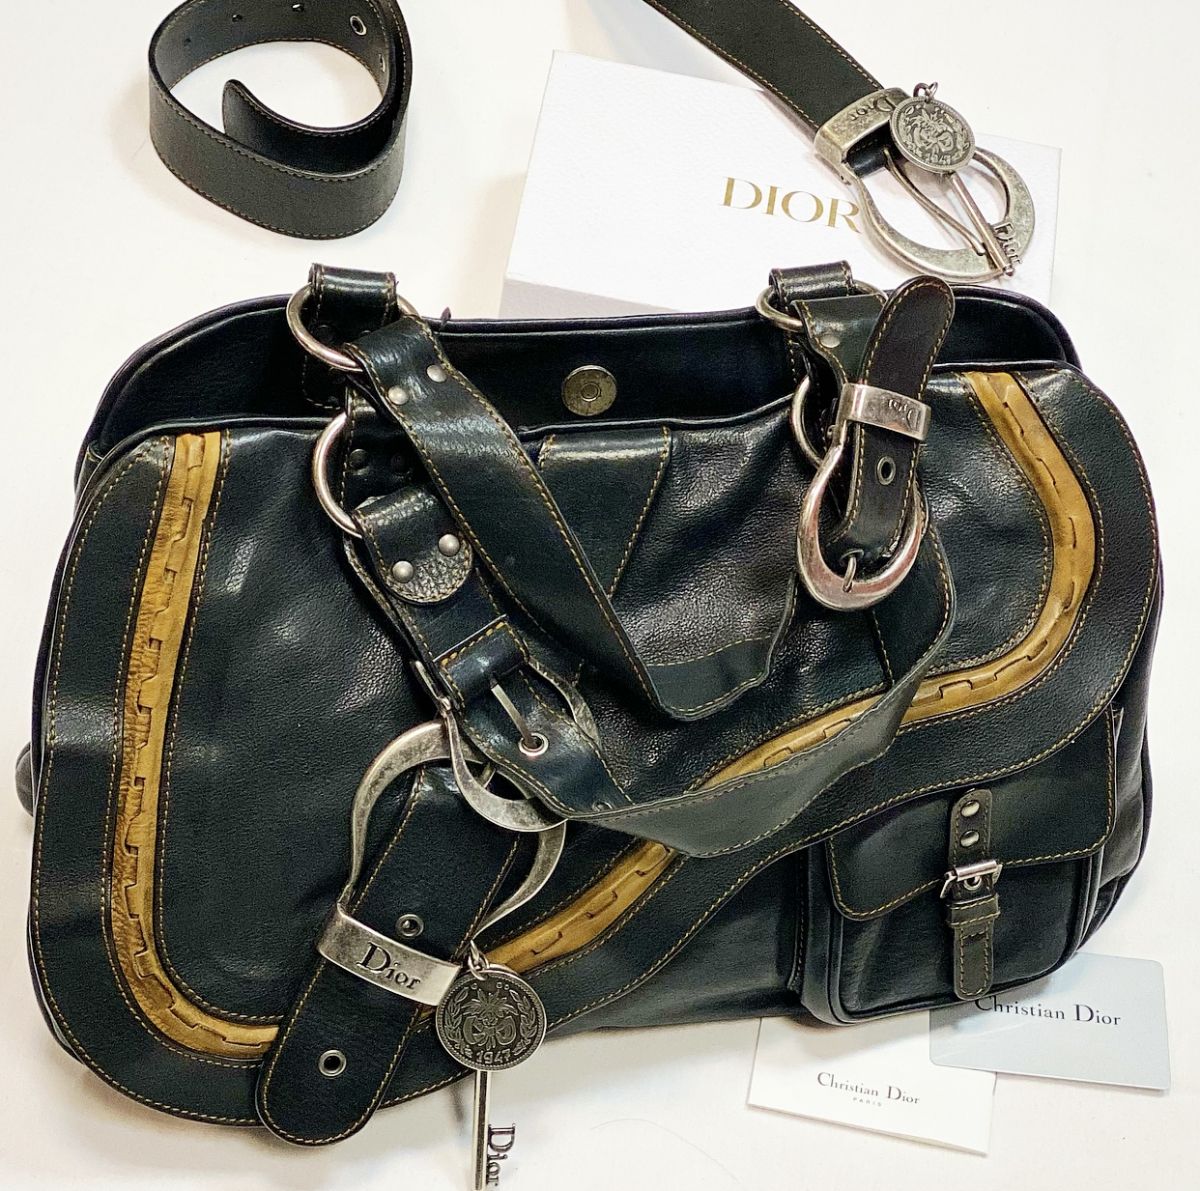 Сумка Christian Dior размер 37/24 цена 15 385 руб